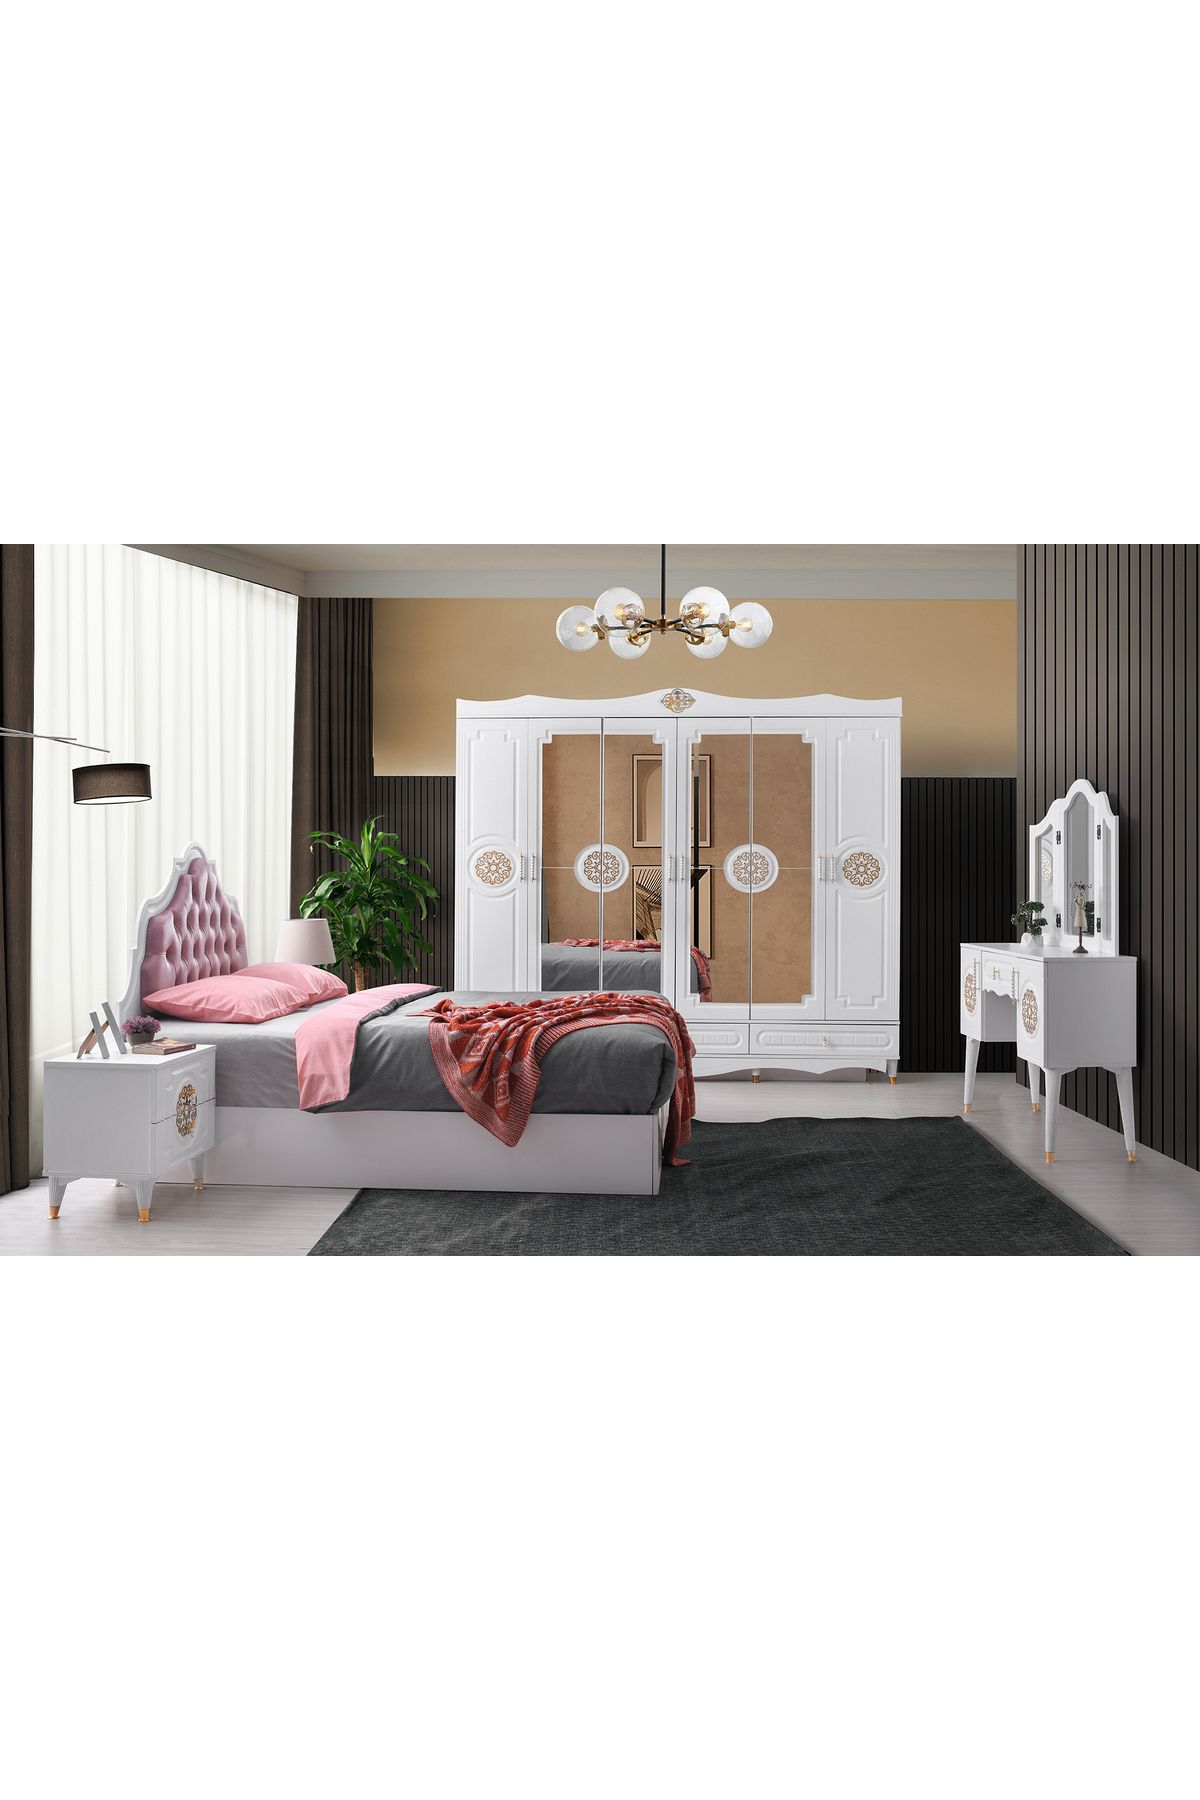 Avm 24 Viyana Yatak Odası-mdf-beyaz-6 Kapaklı Ve Aynalı-bazasız Traversli-ücretsiz Nakliye Ve Montaj